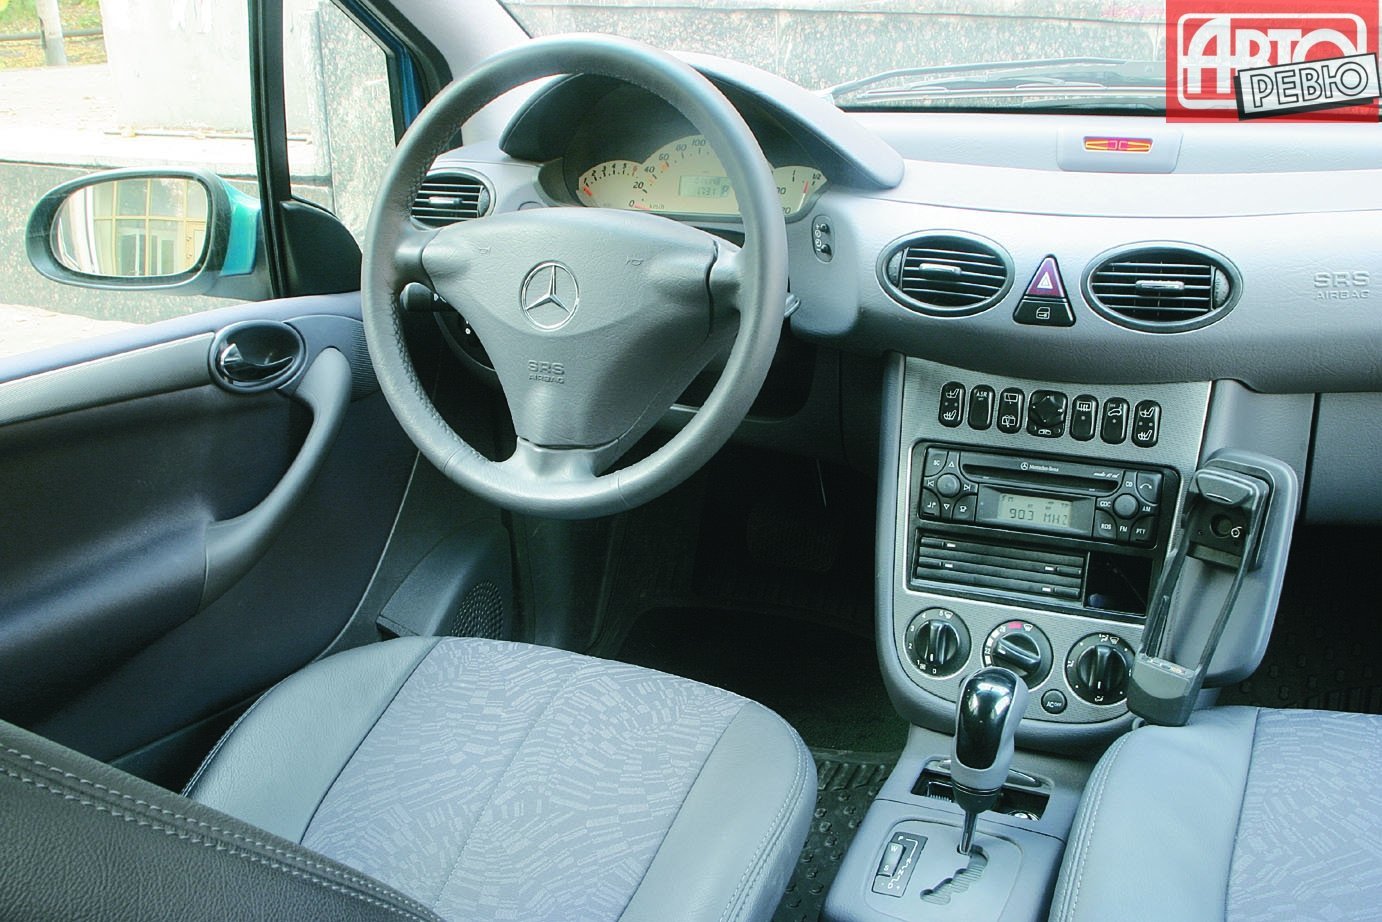 хэтчбек 5 дв. Long Mercedes-Benz A-klasse 2001 - 2004г выпуска модификация 1.4 AT (82 л.с.)